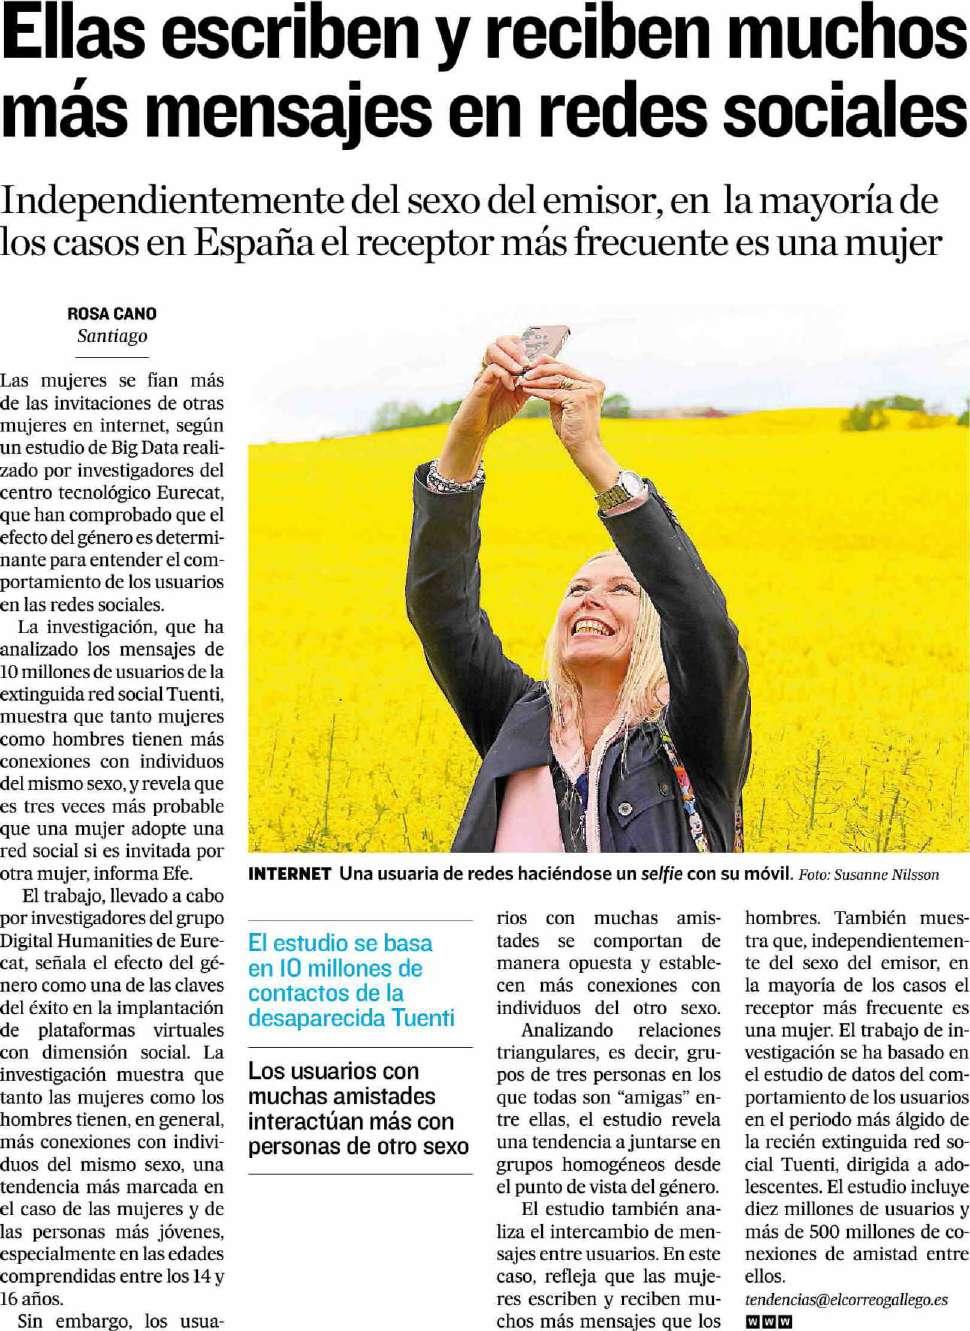 El Correo gallego La Coruña 16/08/16 Prensa: Diaria Tirada: 27.472 Ejemplares Difusión: 22.